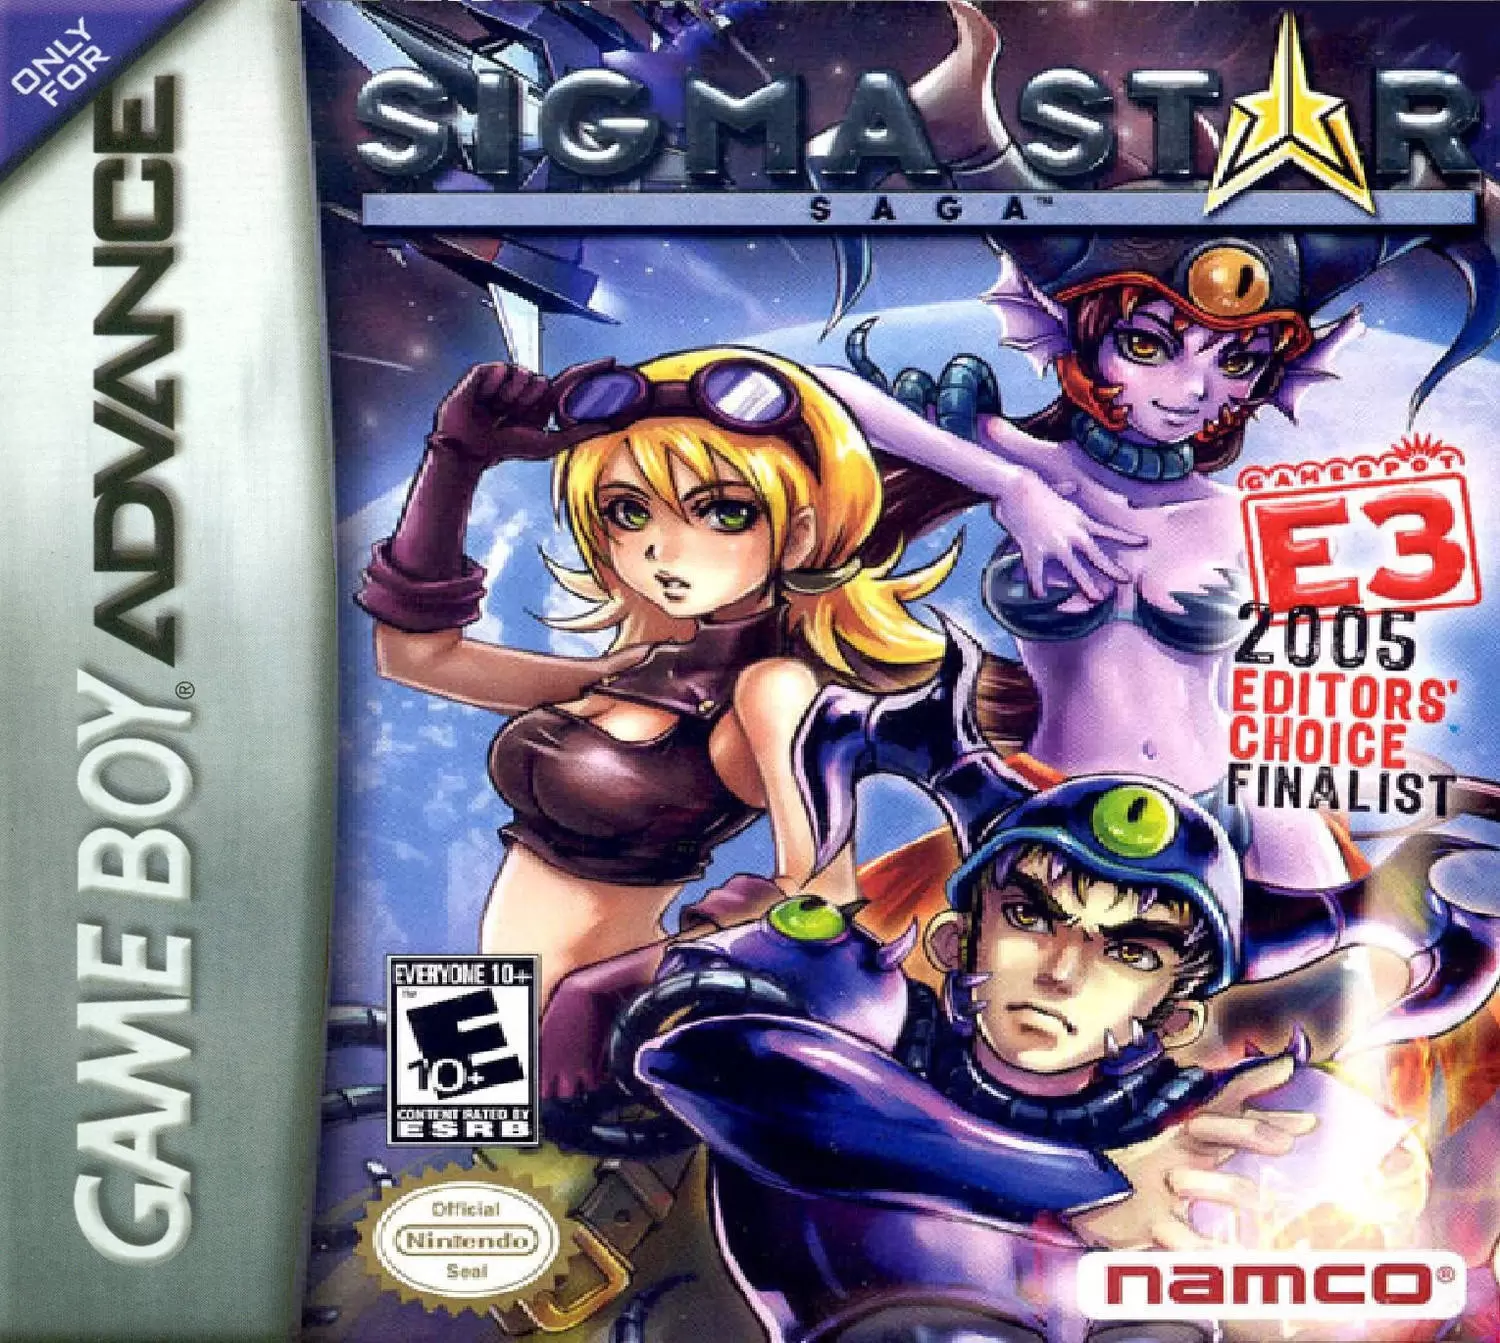 Game Boy Advance Games - Sigma Star Saga